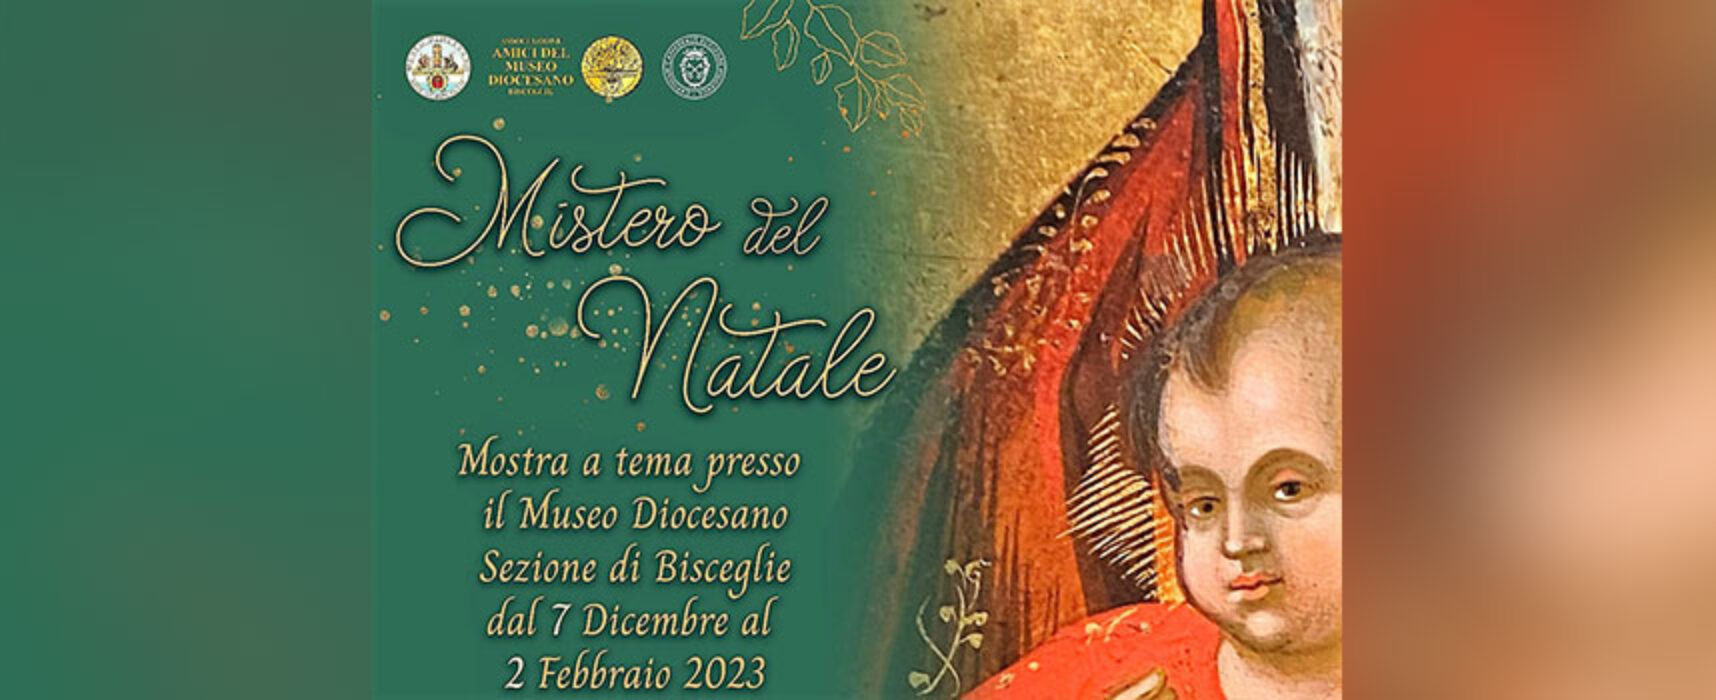 Il Museo Diocesano di Bisceglie ospita la mostra “Mistero del Natale”